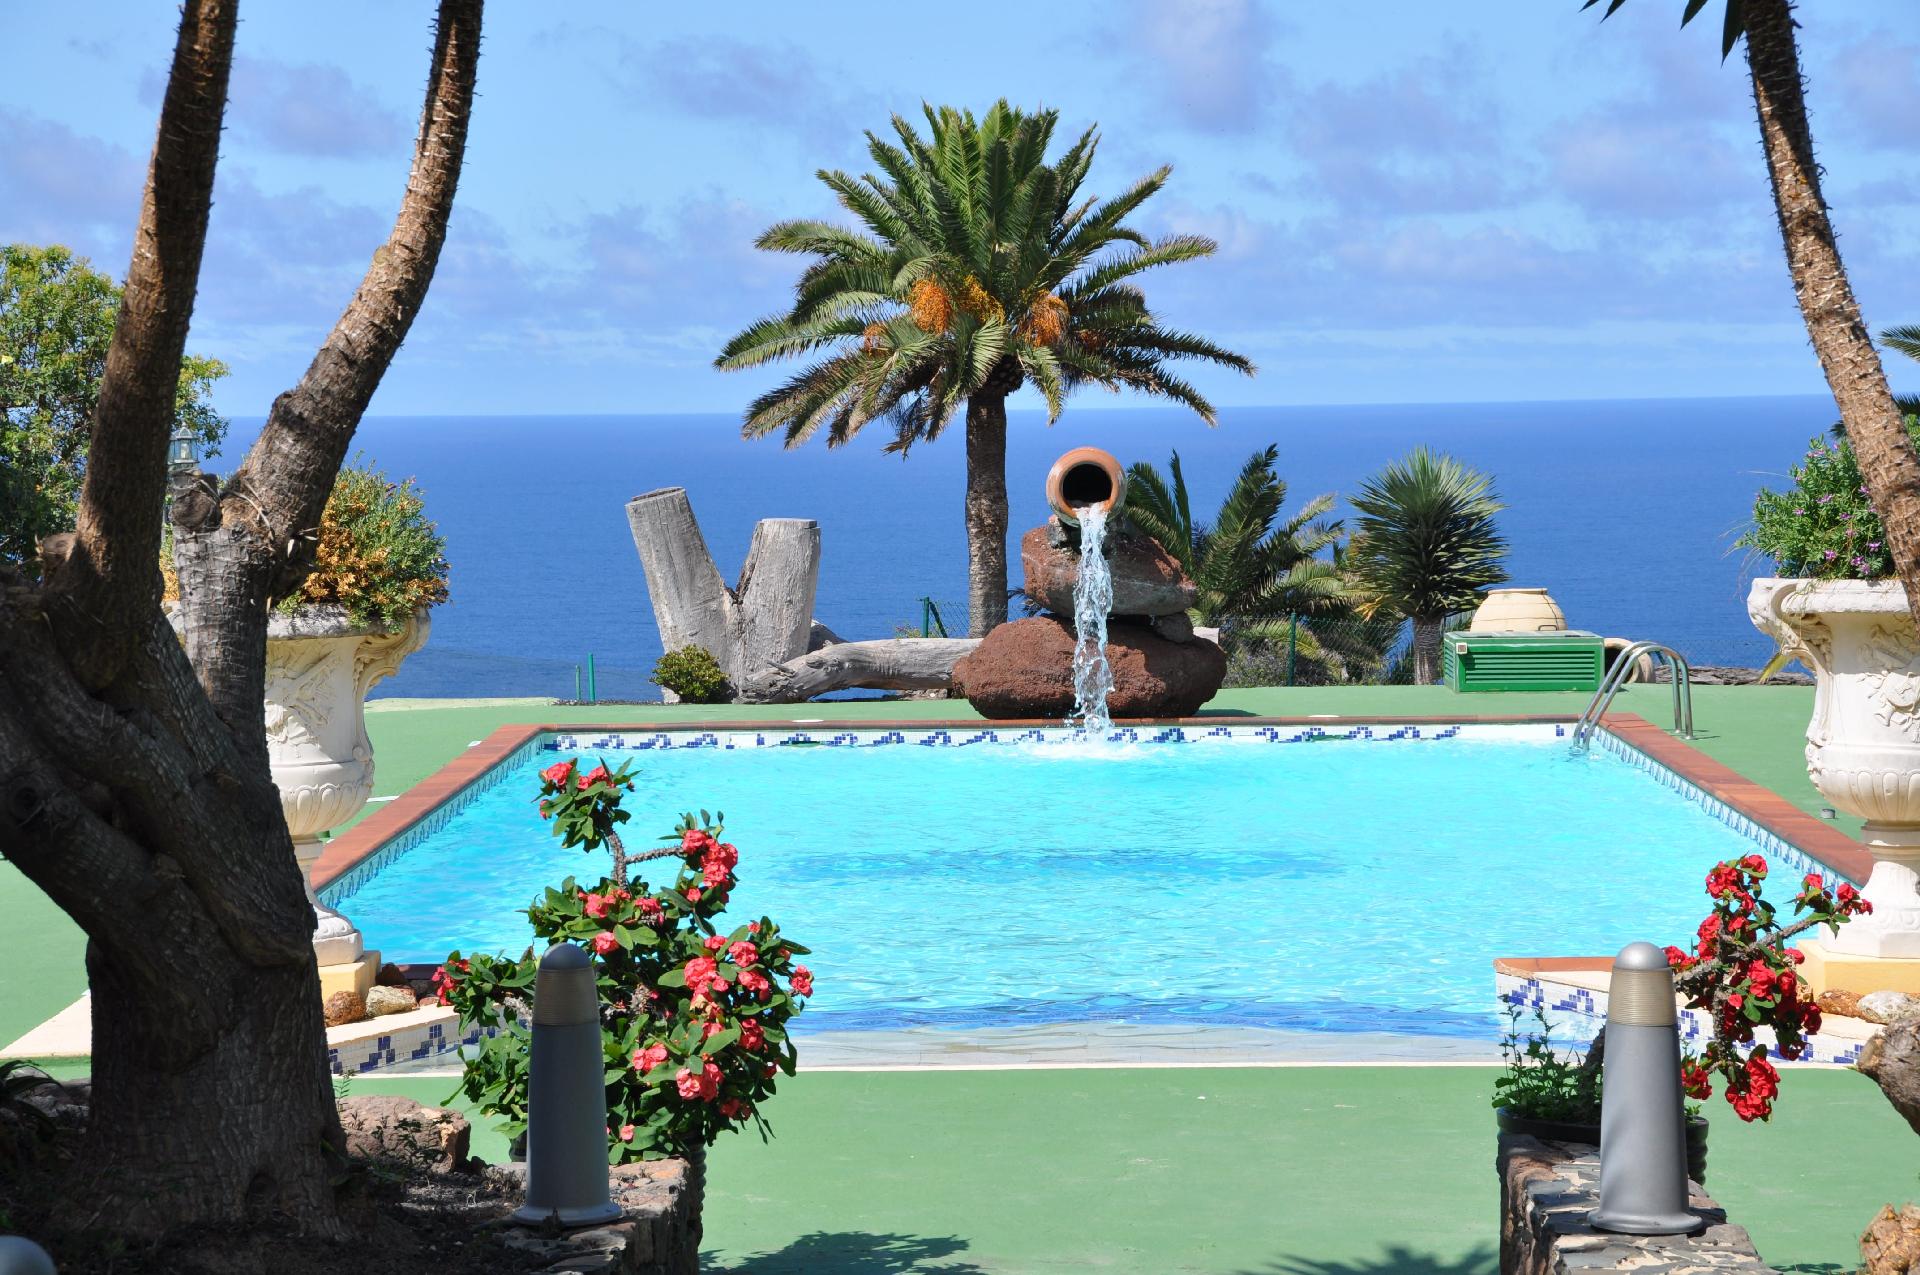 Villa im Kolonialstil mit Pool auf einer weitl&aum Ferienhaus in Europa